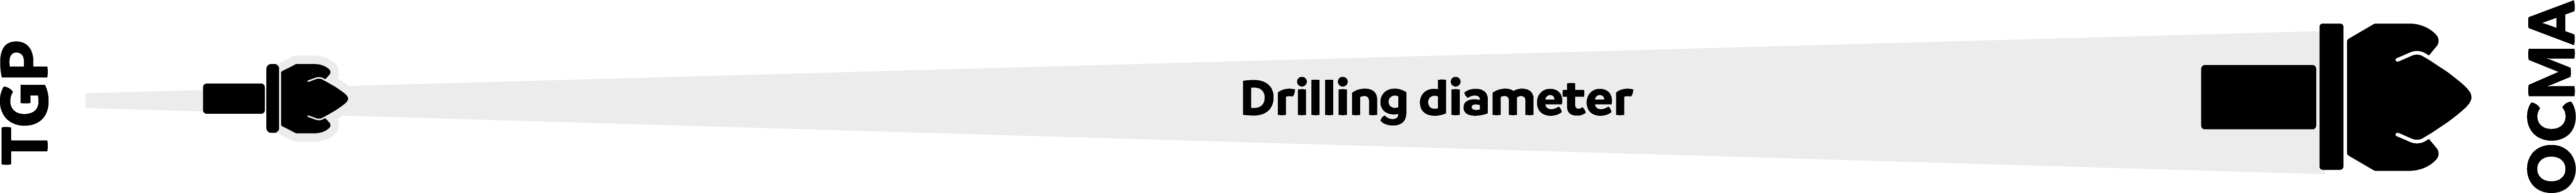 drilling diameter